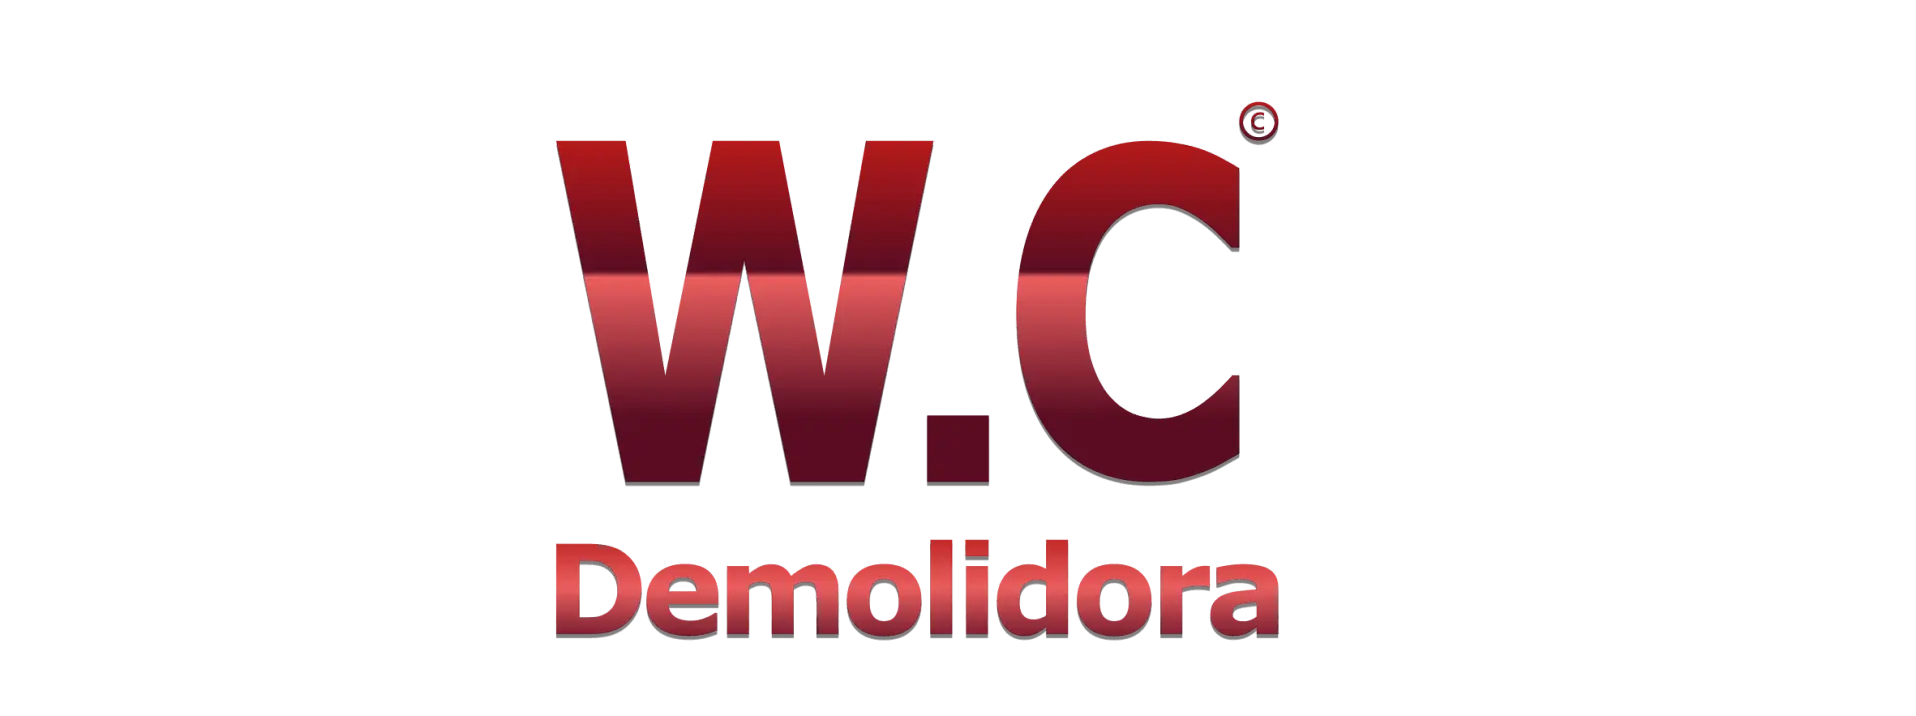 W.C Demolidora